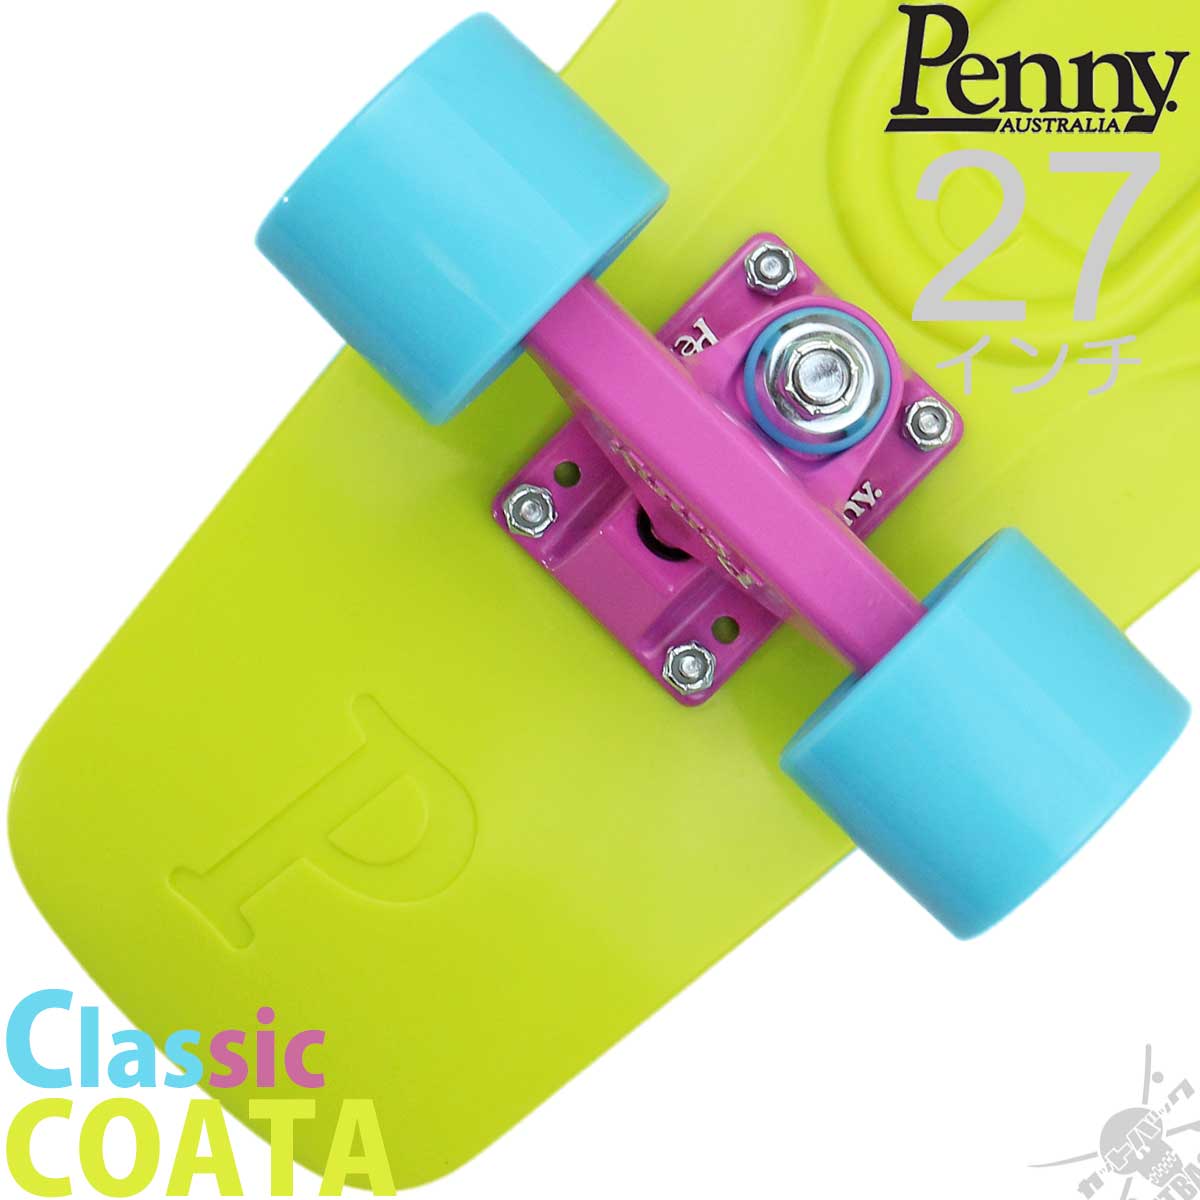 ペニースケートボード 27インチ ニッケル クラシック コスタ Penny Skateboard Nickel Classic Costa  スケートボード スケボー スケート ペニー クルーザー コンプリート 完成品 ブランド 国内正規品 おすすめ 人気 プレゼント | 